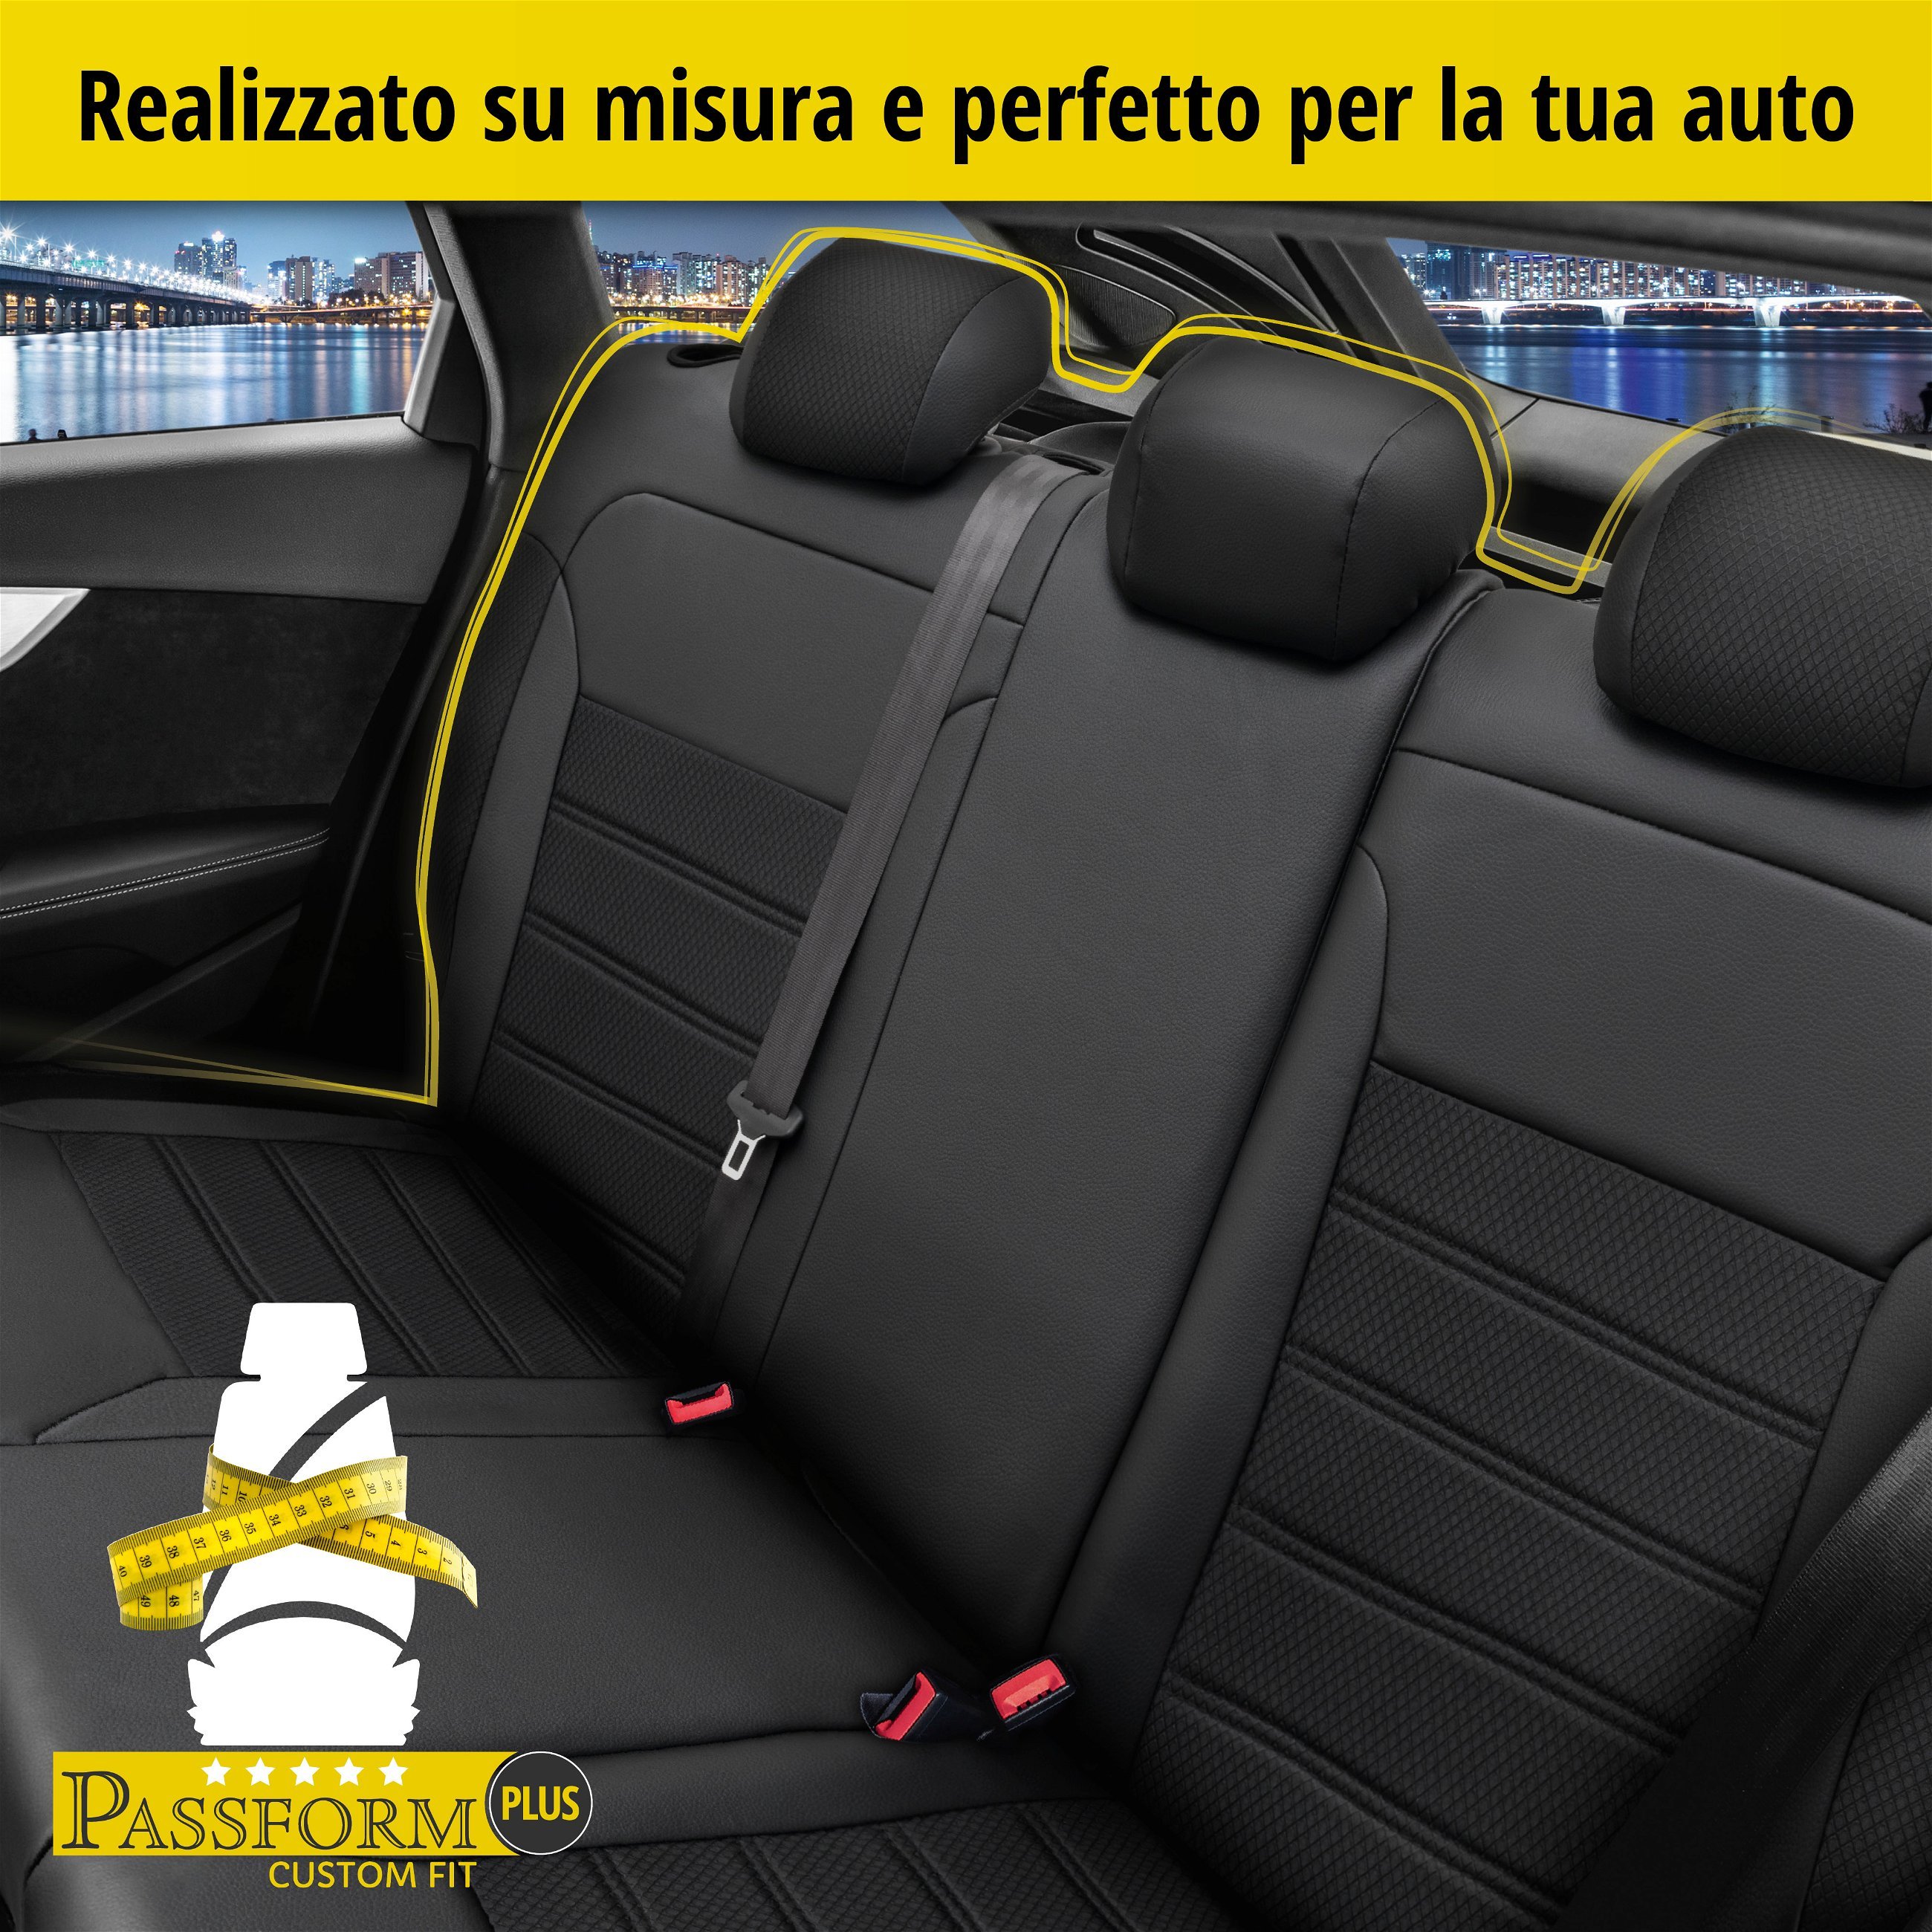 Coprisedili Aversa per Fiat Panda/Panda Classic 09/2003-Oggi, 1 coprisedili posteriore per sedili normali